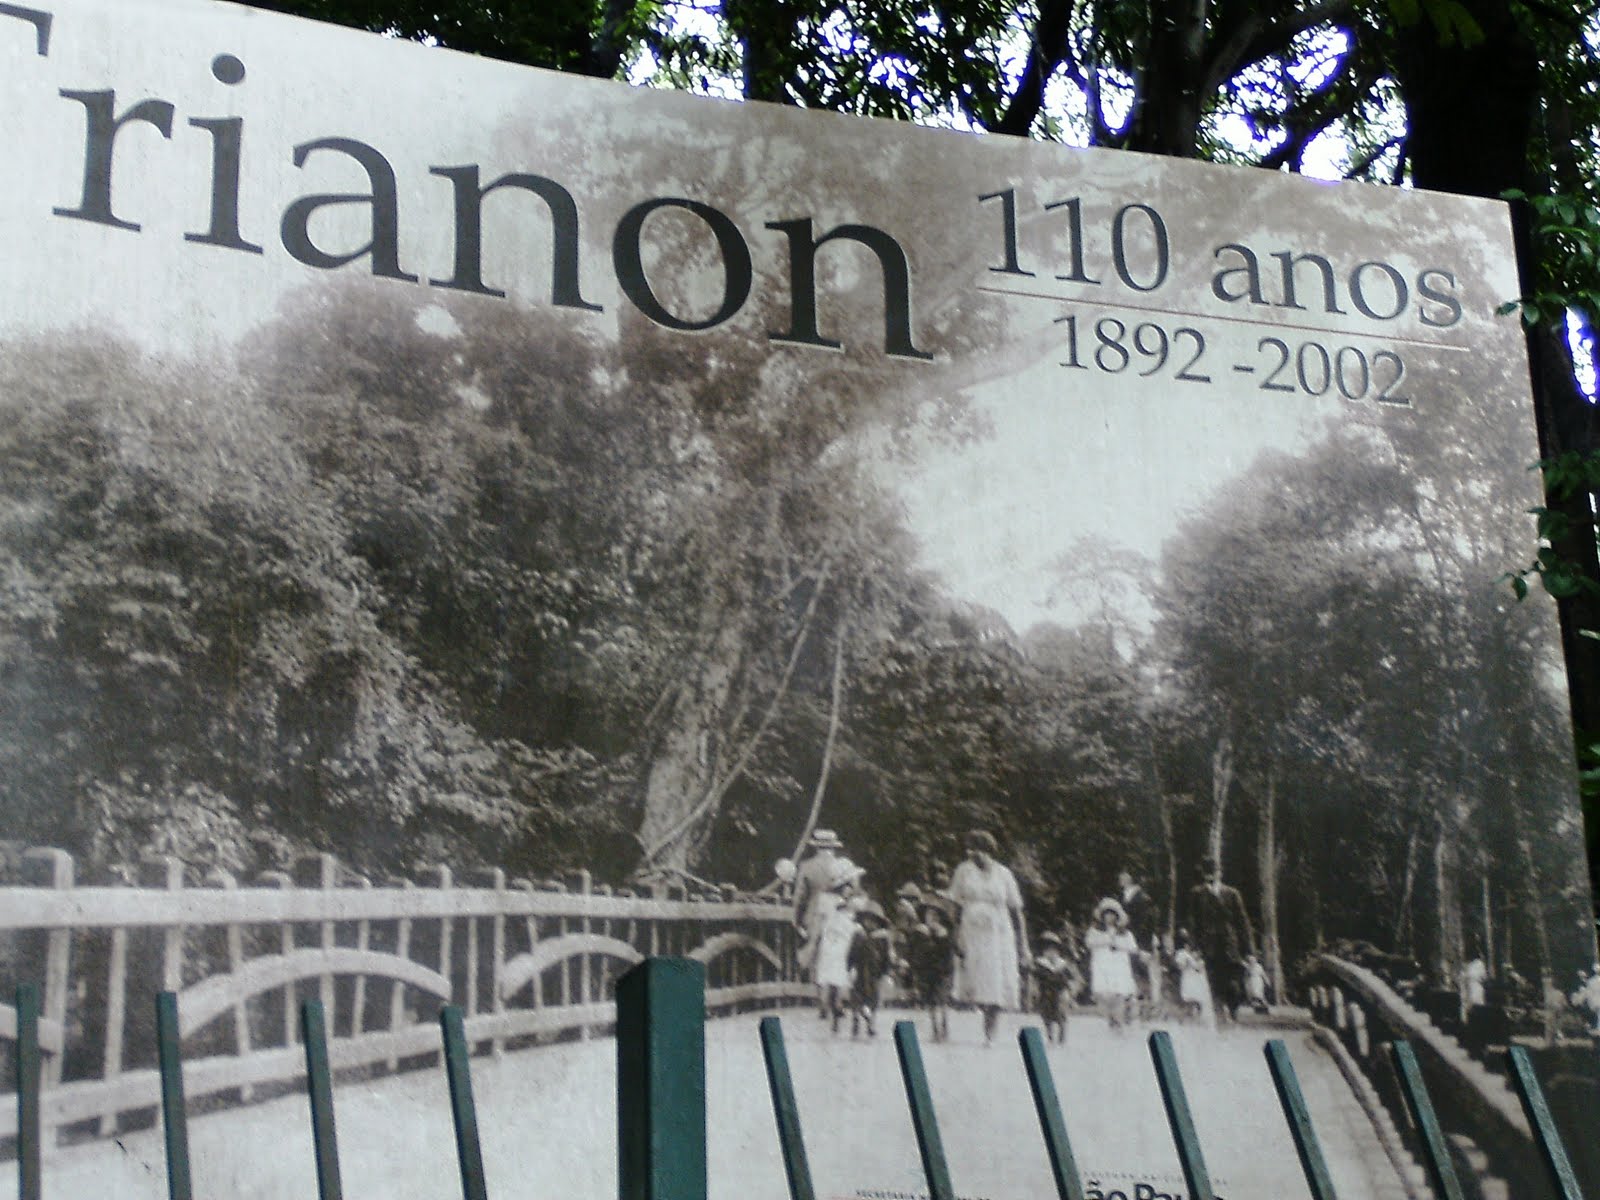 trianon 02 j villavisencio 1 - Serie Avenida Paulista: 125 anos e 1 mês da avenida símbolo de São Paulo